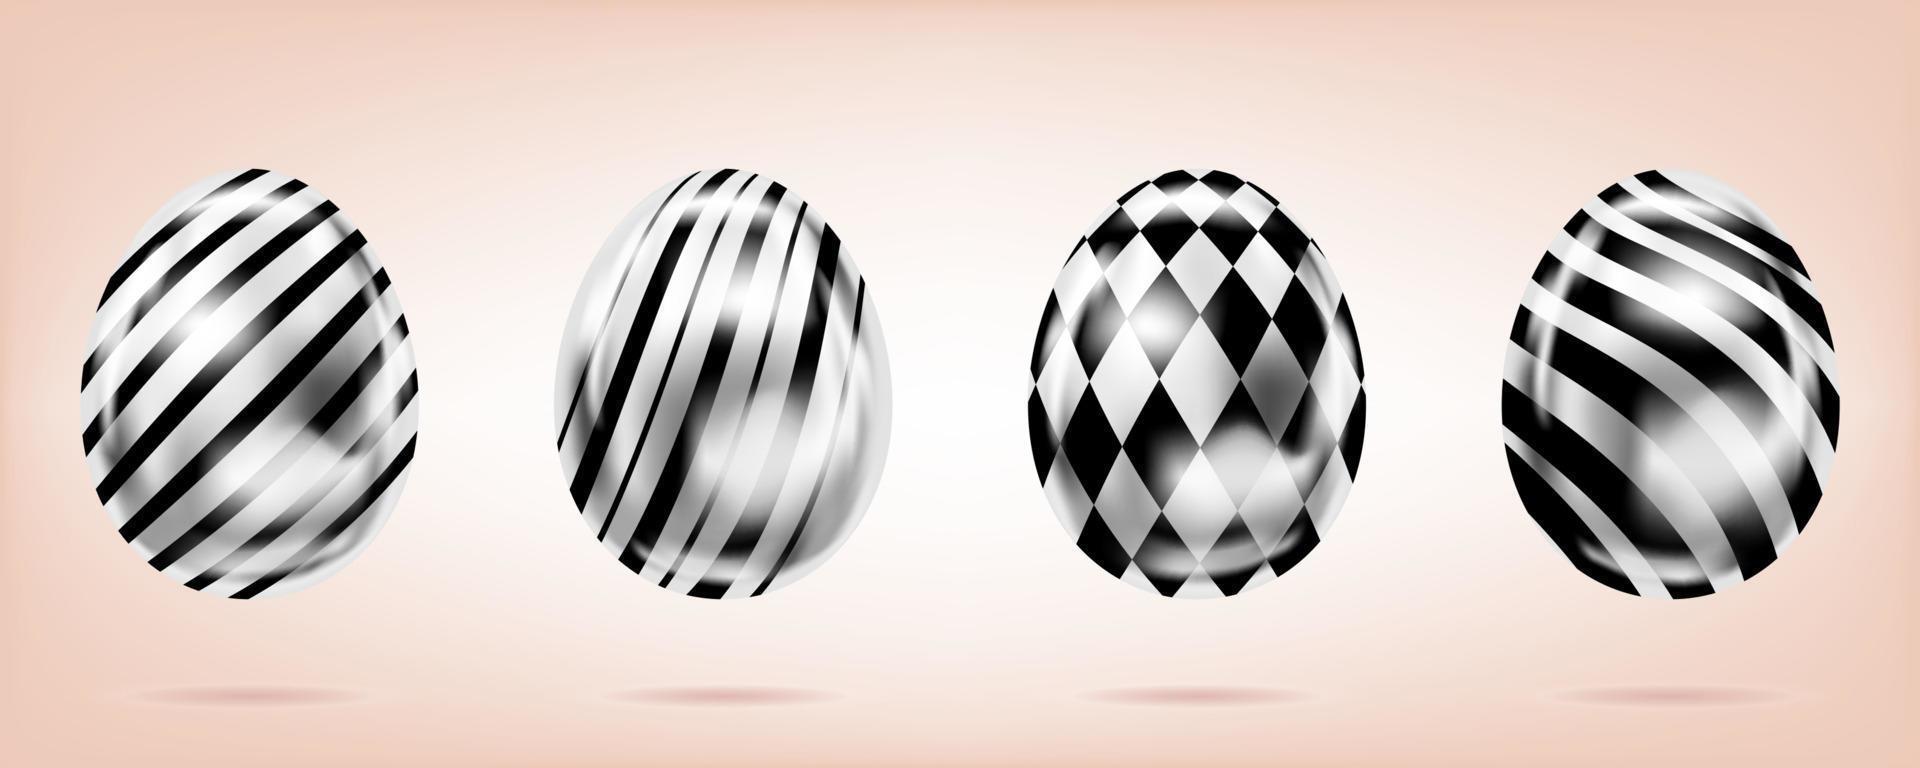 quattro uova d'argento sullo sfondo rosa. oggetti isolati per la decorazione di pasqua. strisce e diamanti decorati vettore